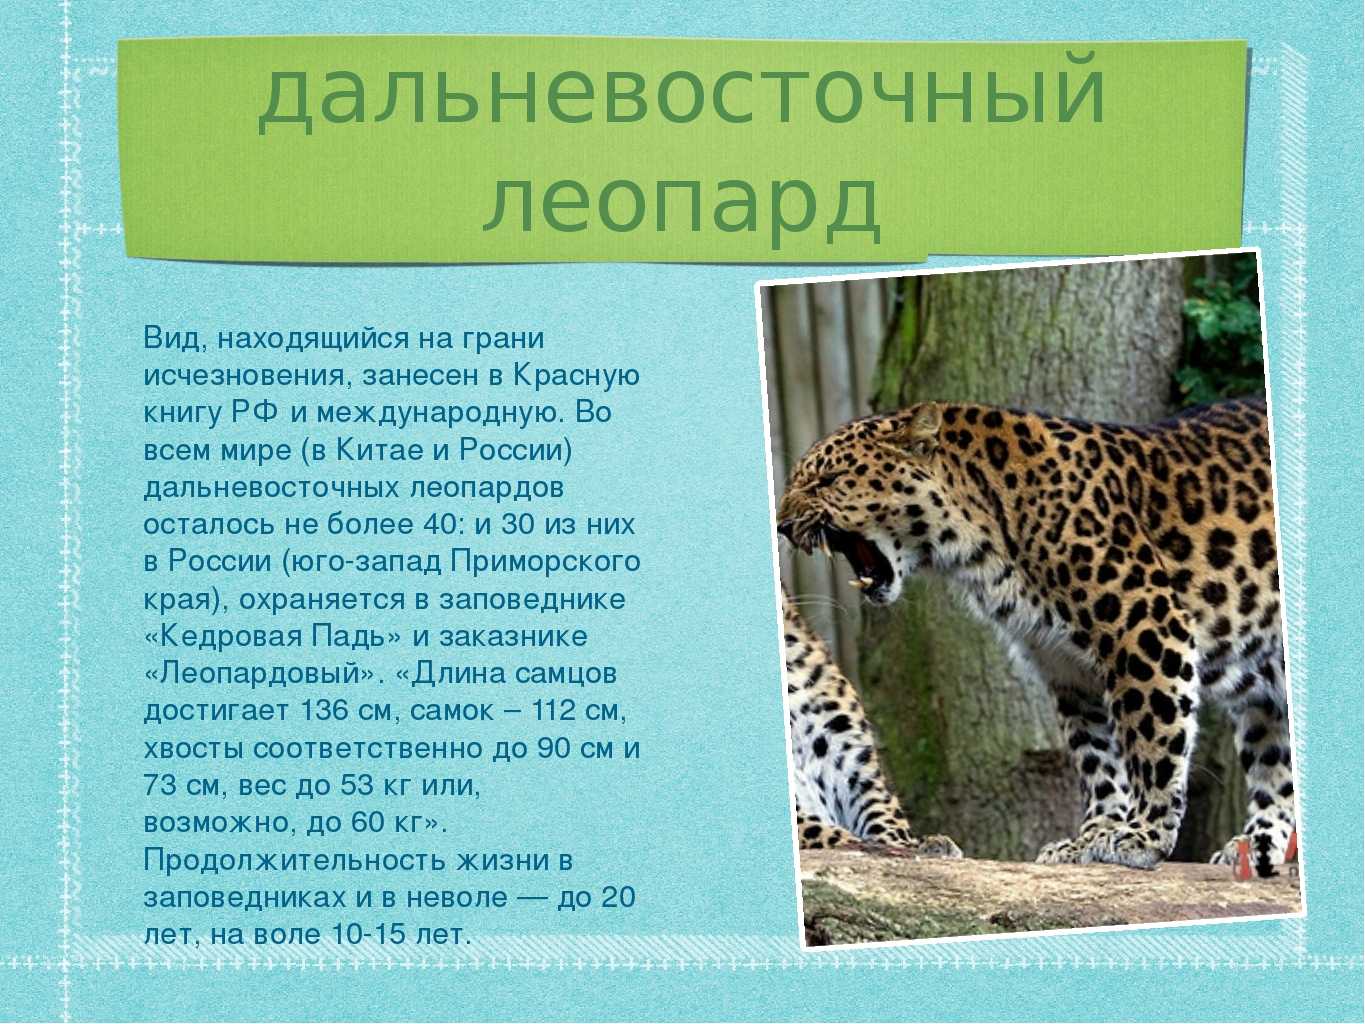 10 редких видов животных, встречающихся на территории россии